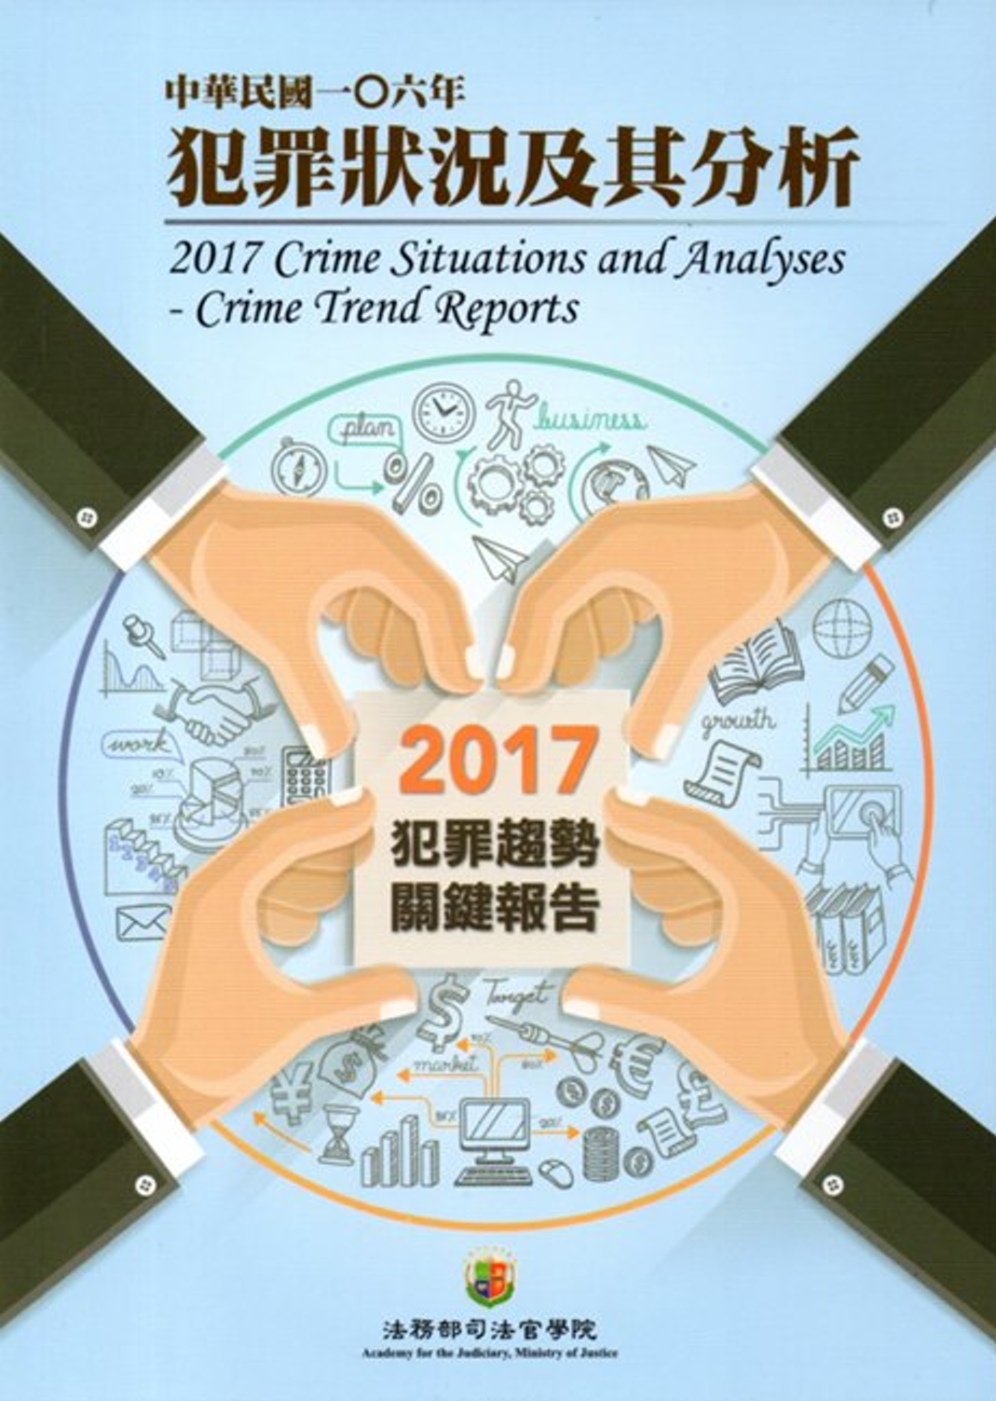 中華民國一O六年犯罪狀況及其分析-2017年犯罪趨勢關鍵報告